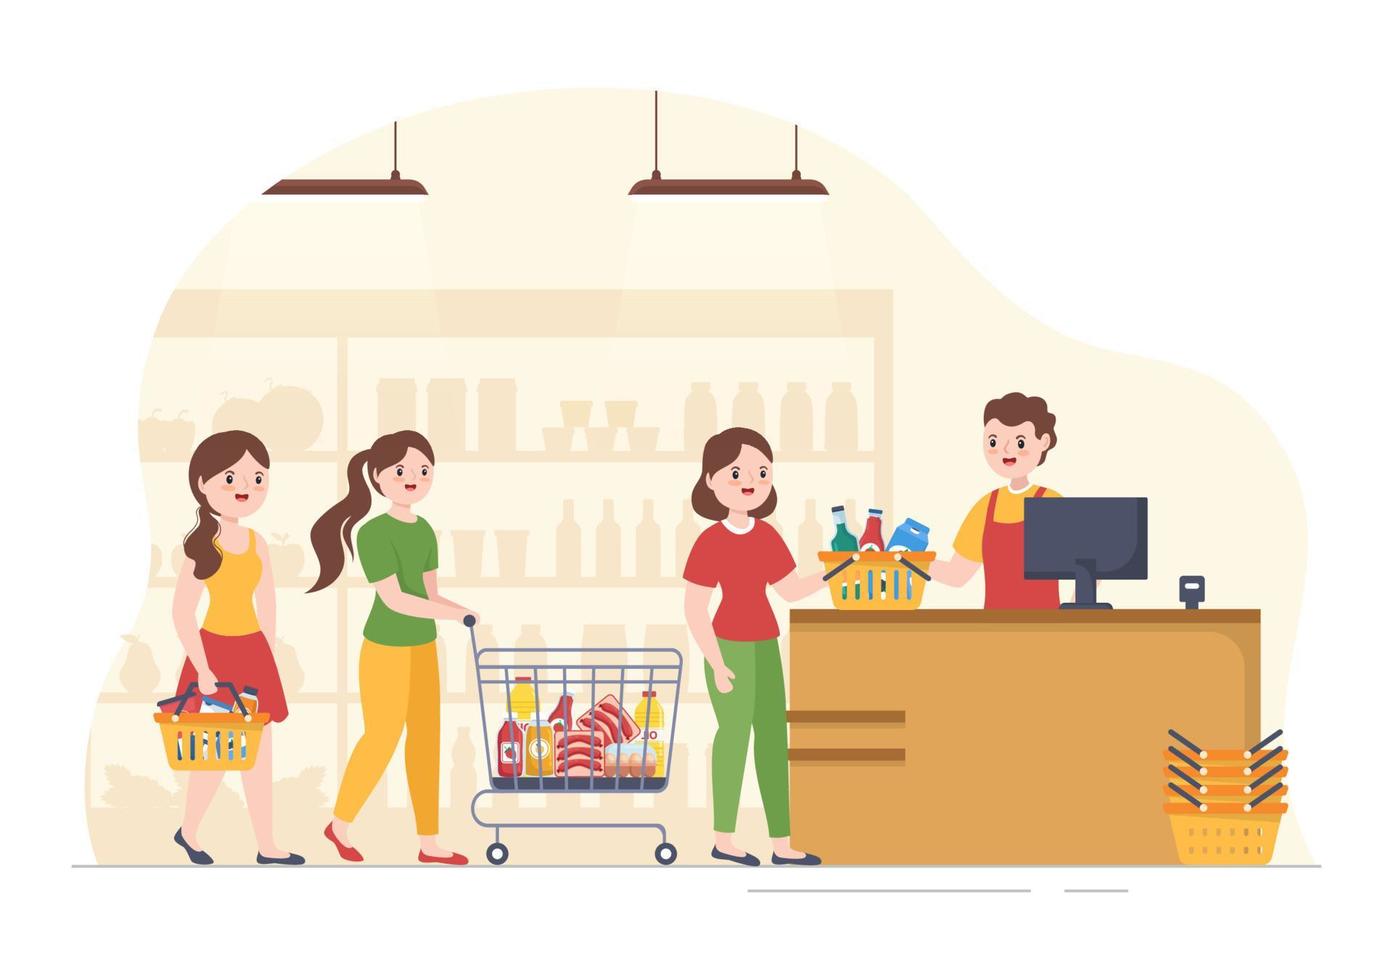 épicerie ou supermarché avec étagères de produits alimentaires, étagères produits laitiers, fruits et boissons pour faire du shopping dans l'illustration de modèles dessinés à la main de dessin animé plat vecteur